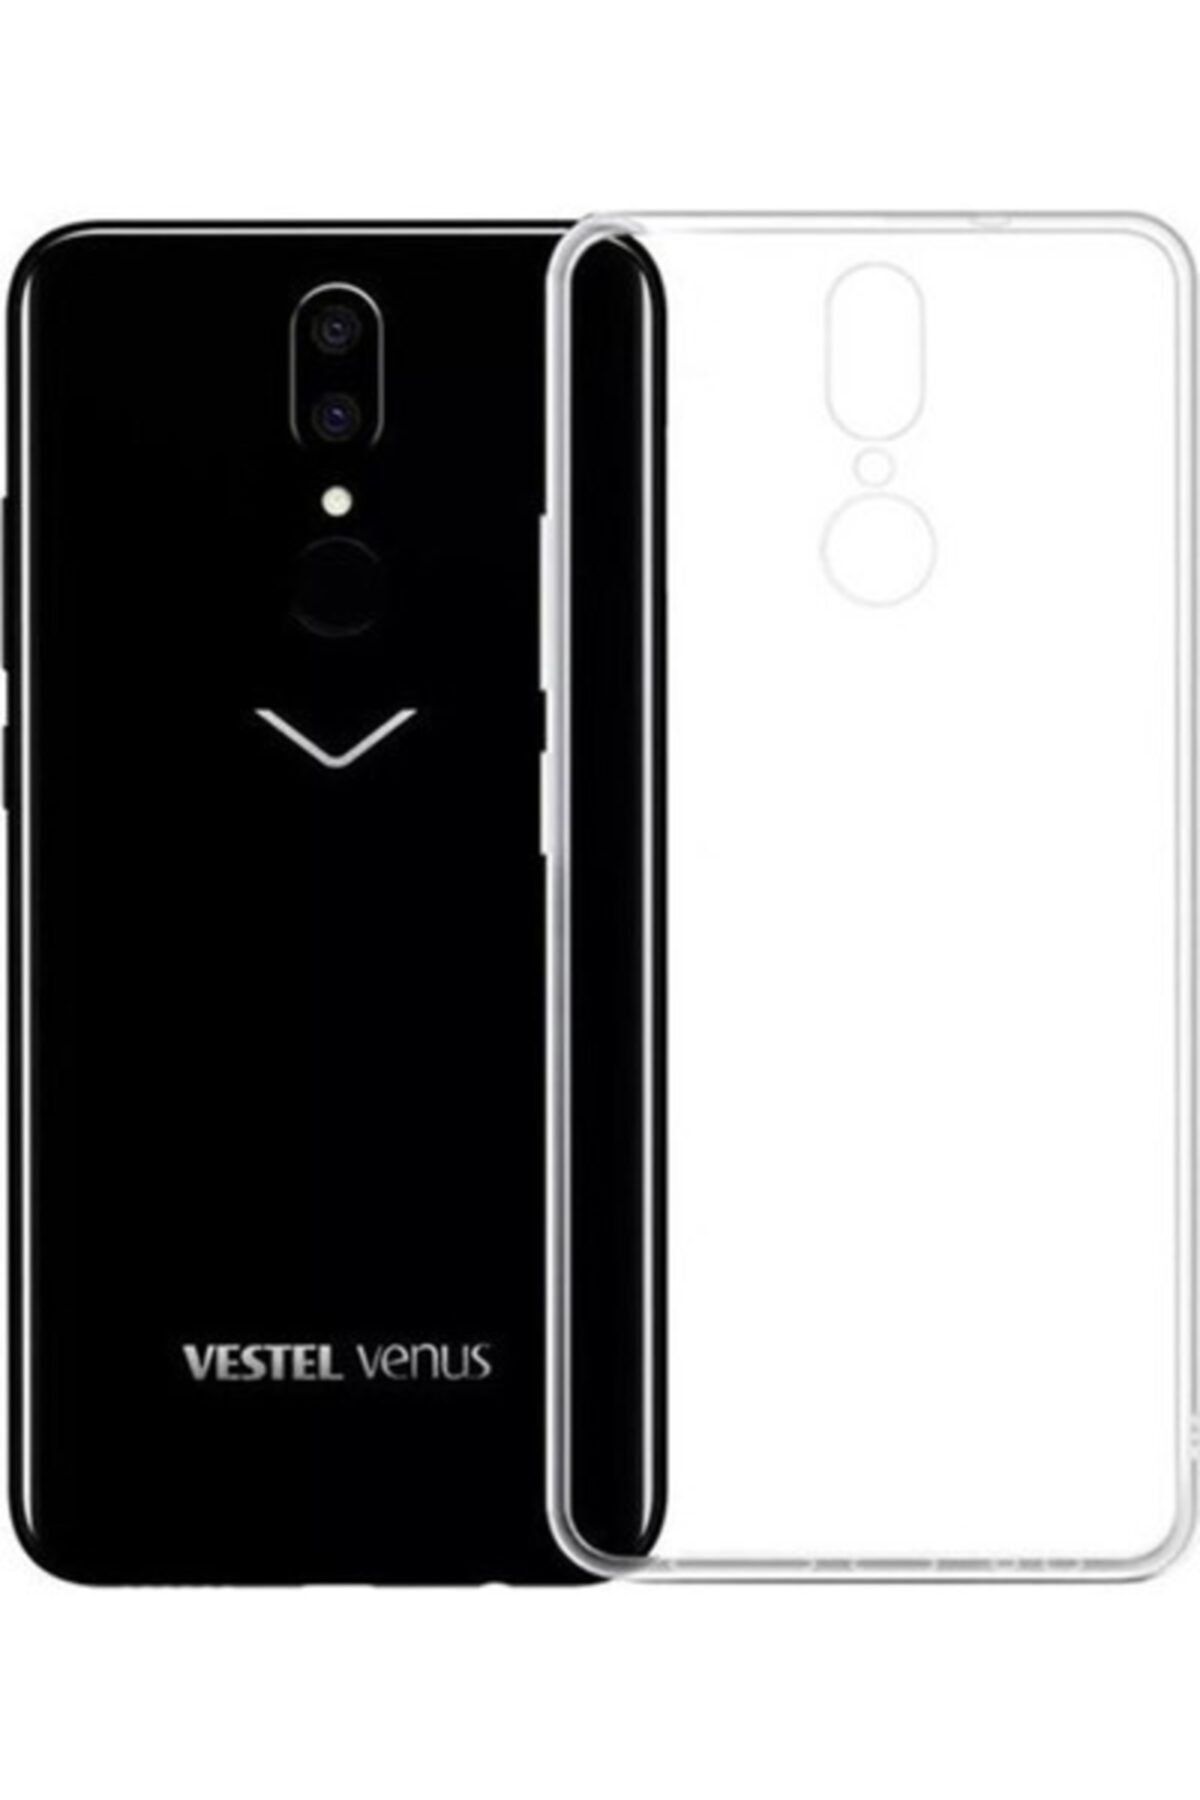 tekno grup Vestel Venüs V7 Kılıf Darbe Emici Süper Silikon Kılıf + Cam Ekran Koruyucu